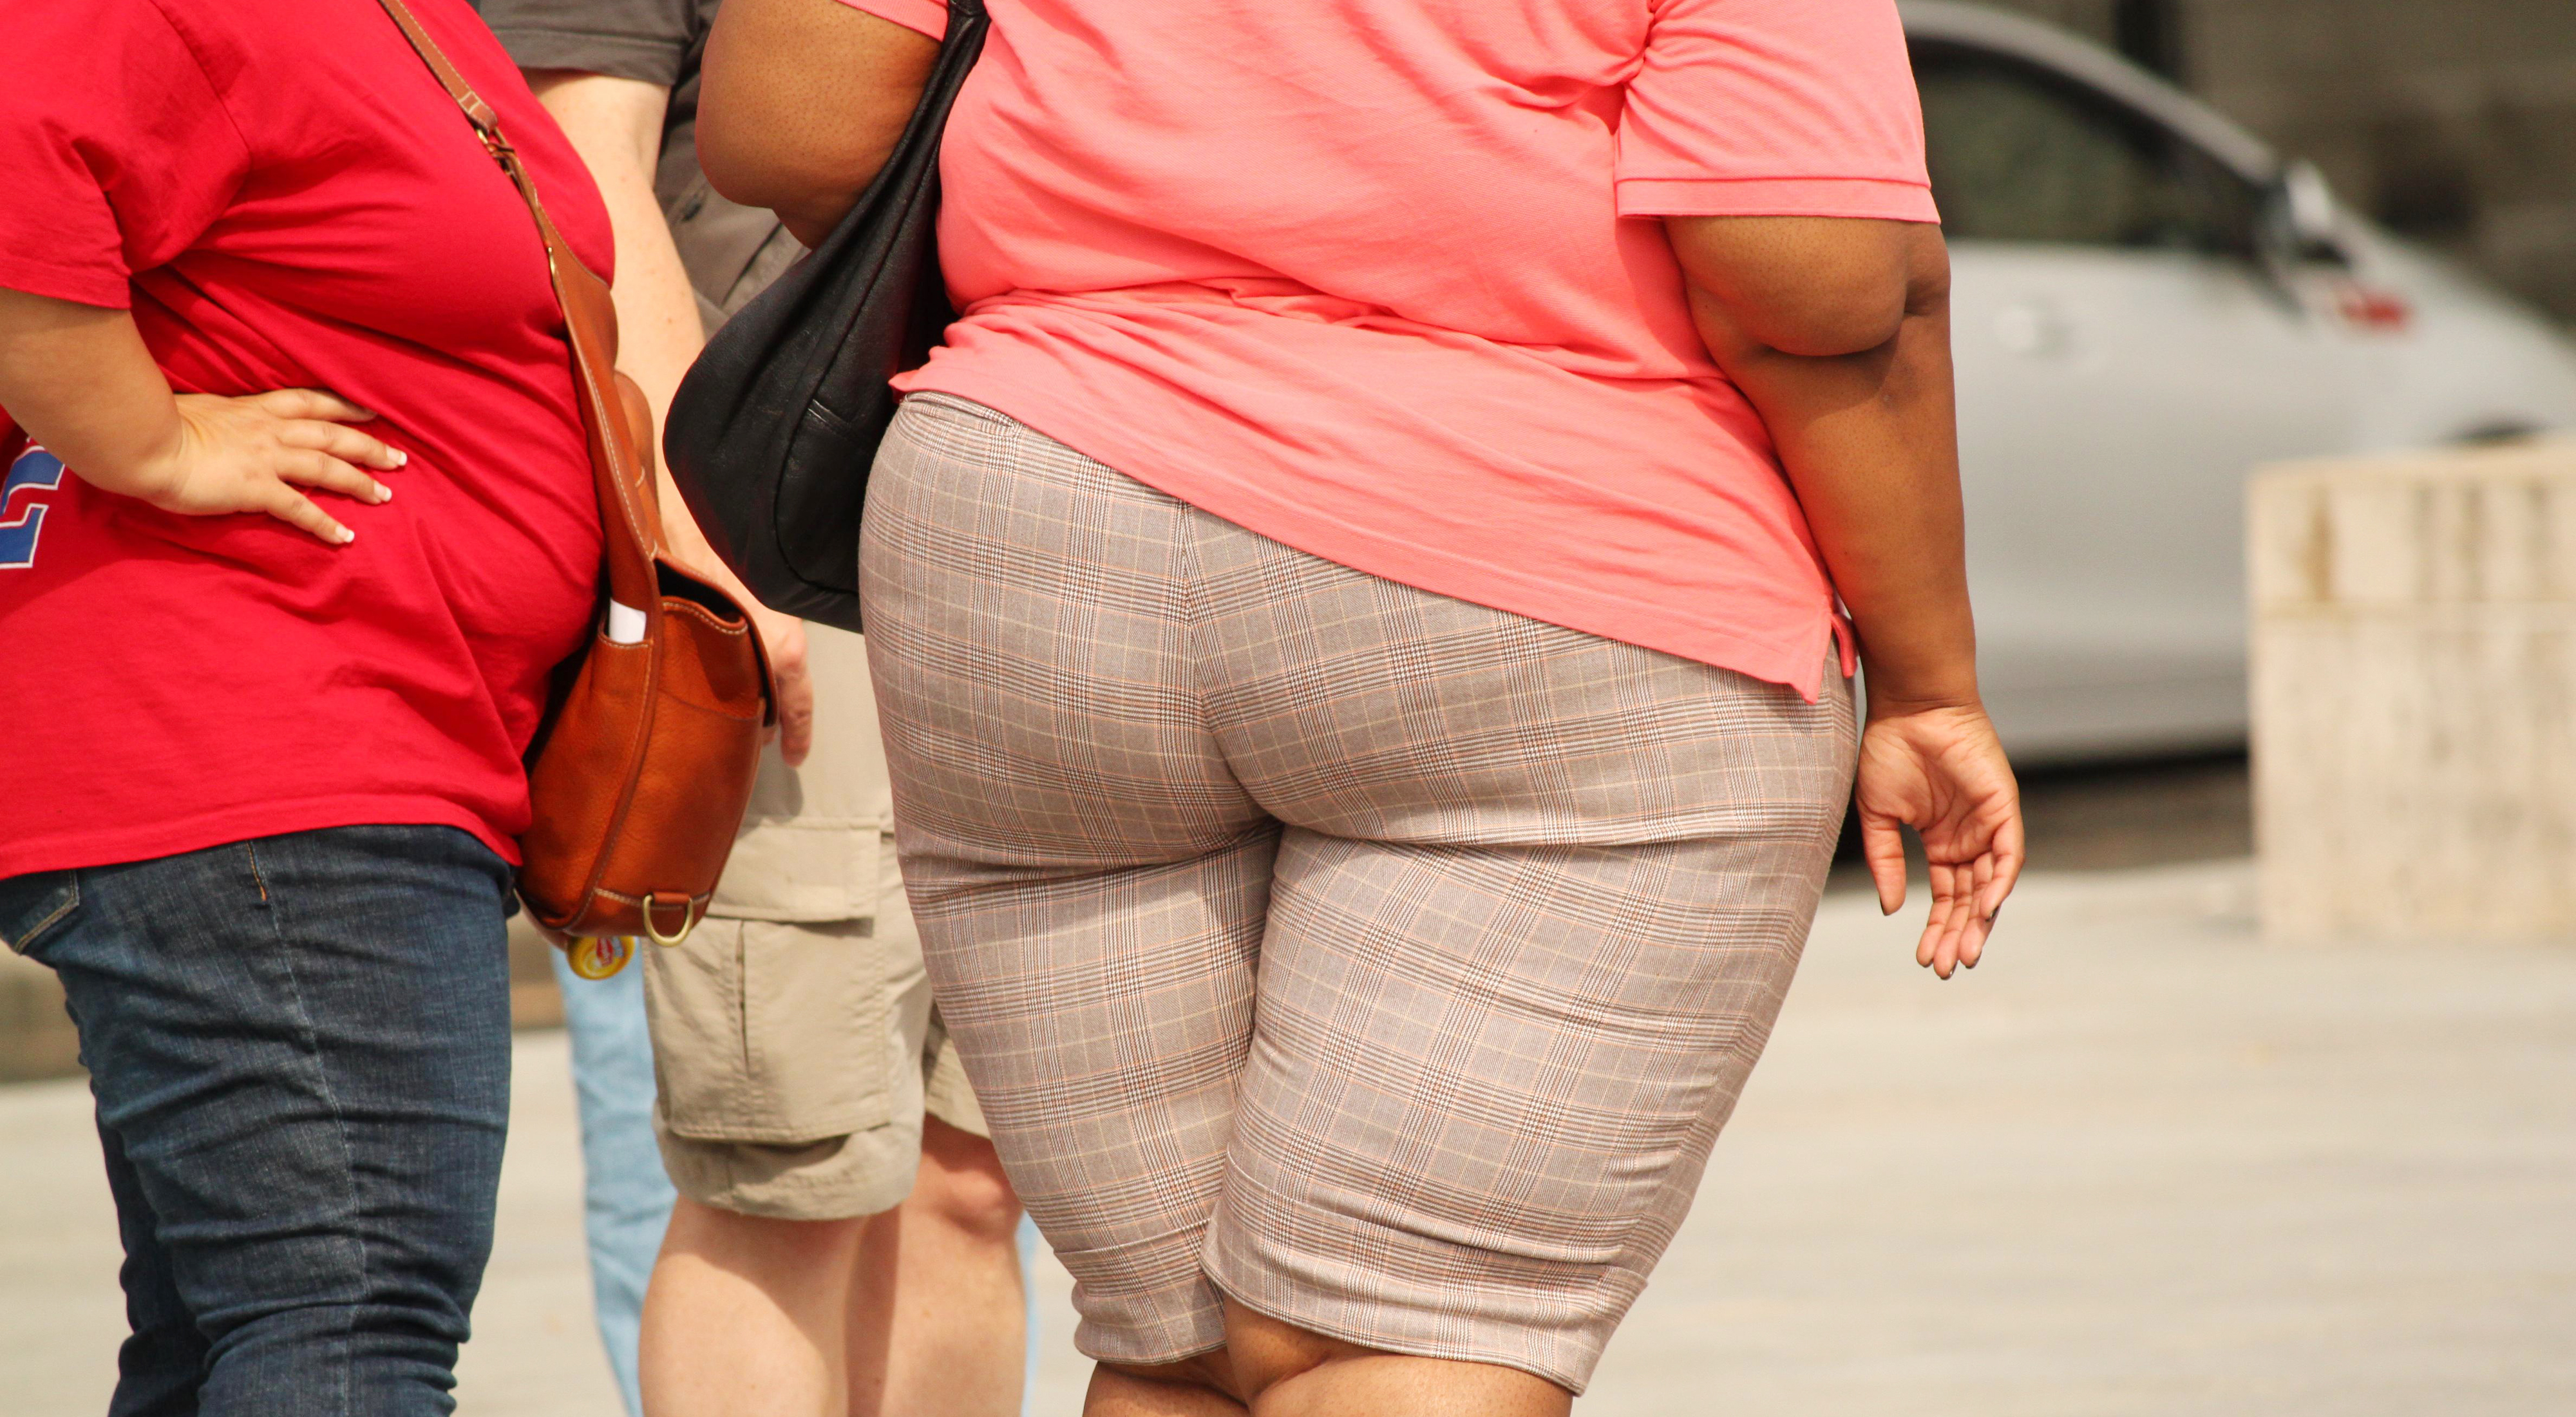 Wat gebeurt er met het lichaam bij zwaarlijvigheid?